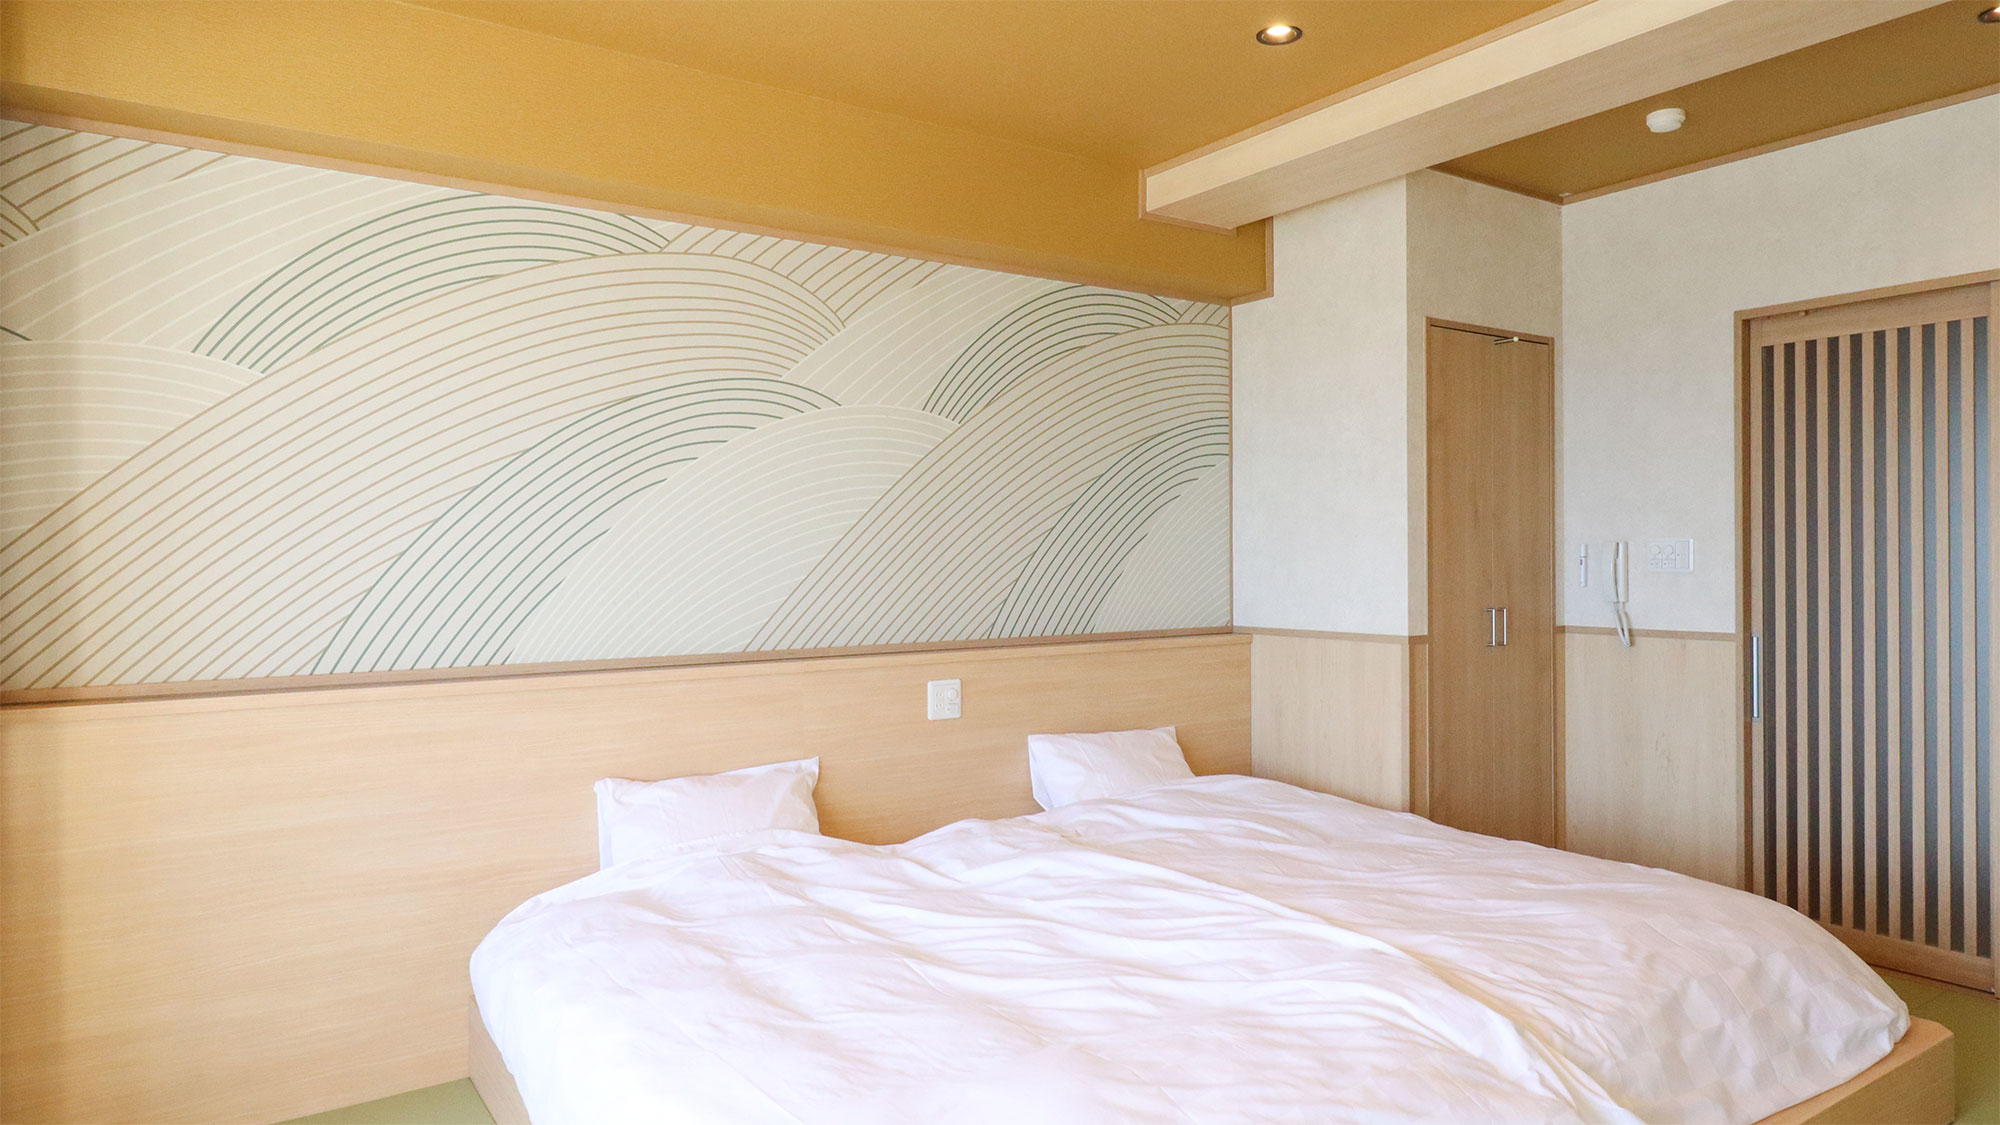 愛知県南知多町の旅館の和モダンな客室に、波をグラフィカルに表現した「SWELL / P103」を展開